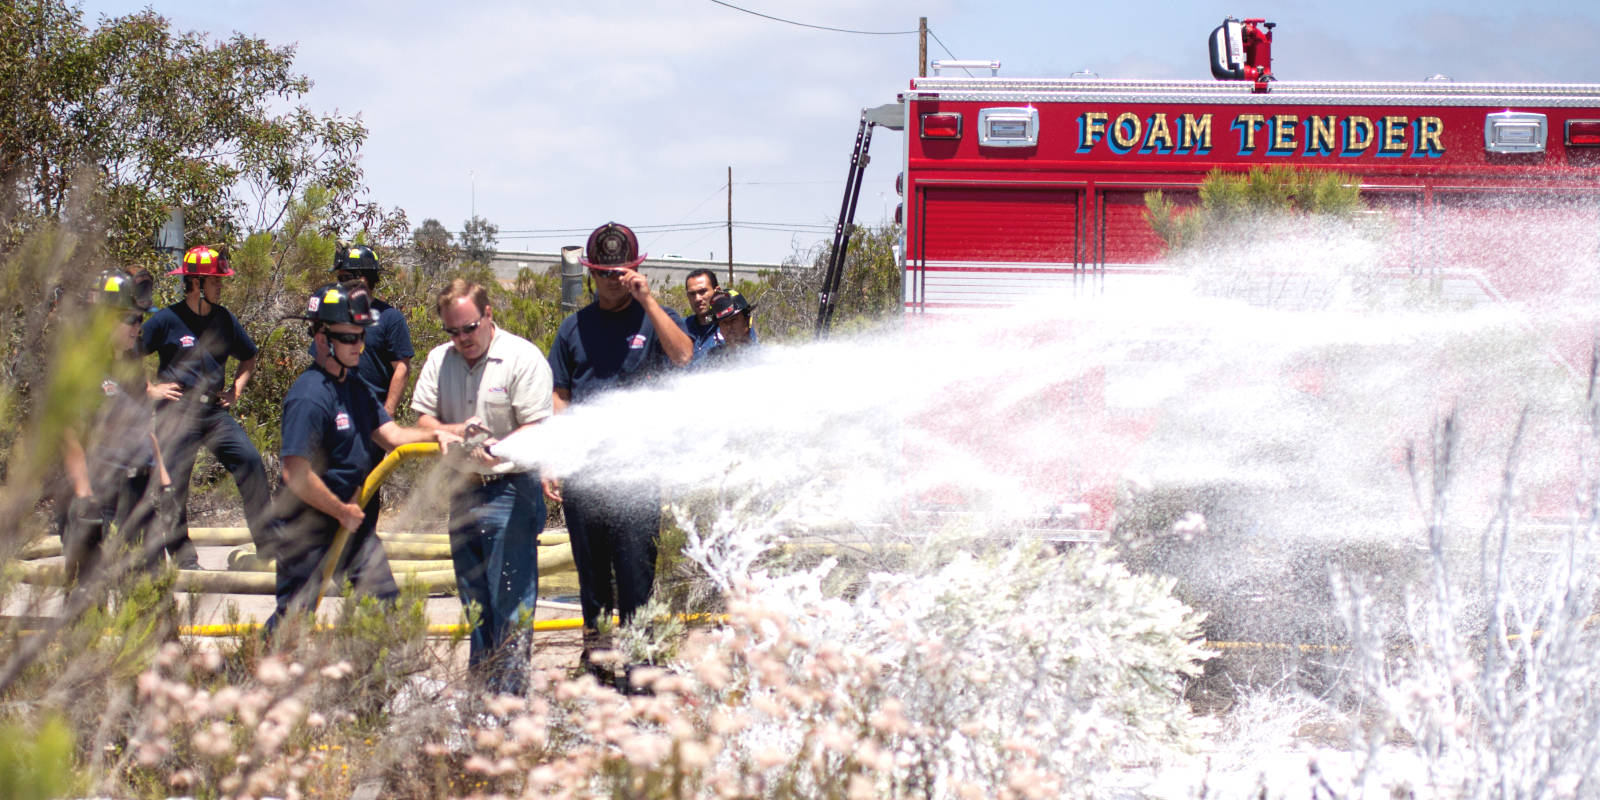 Firefighter's training on a foam tender